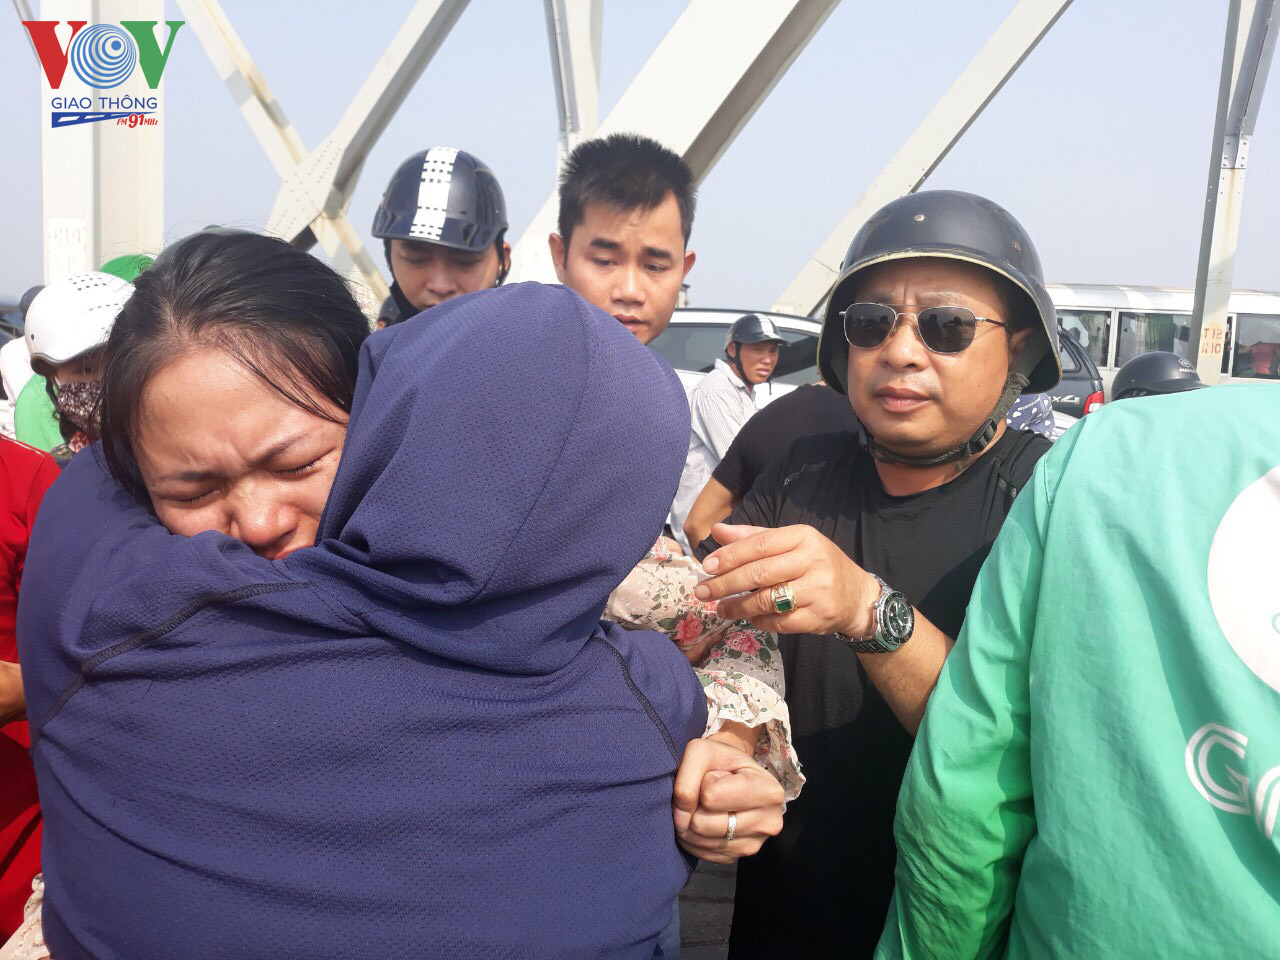 Sau một khoảng thời gian khuyên nhủ, đồng chí Tạ Quang Dũng, CSGT Đội 5, cùng người dân đưa được người phụ nữ vào trong cầu. 